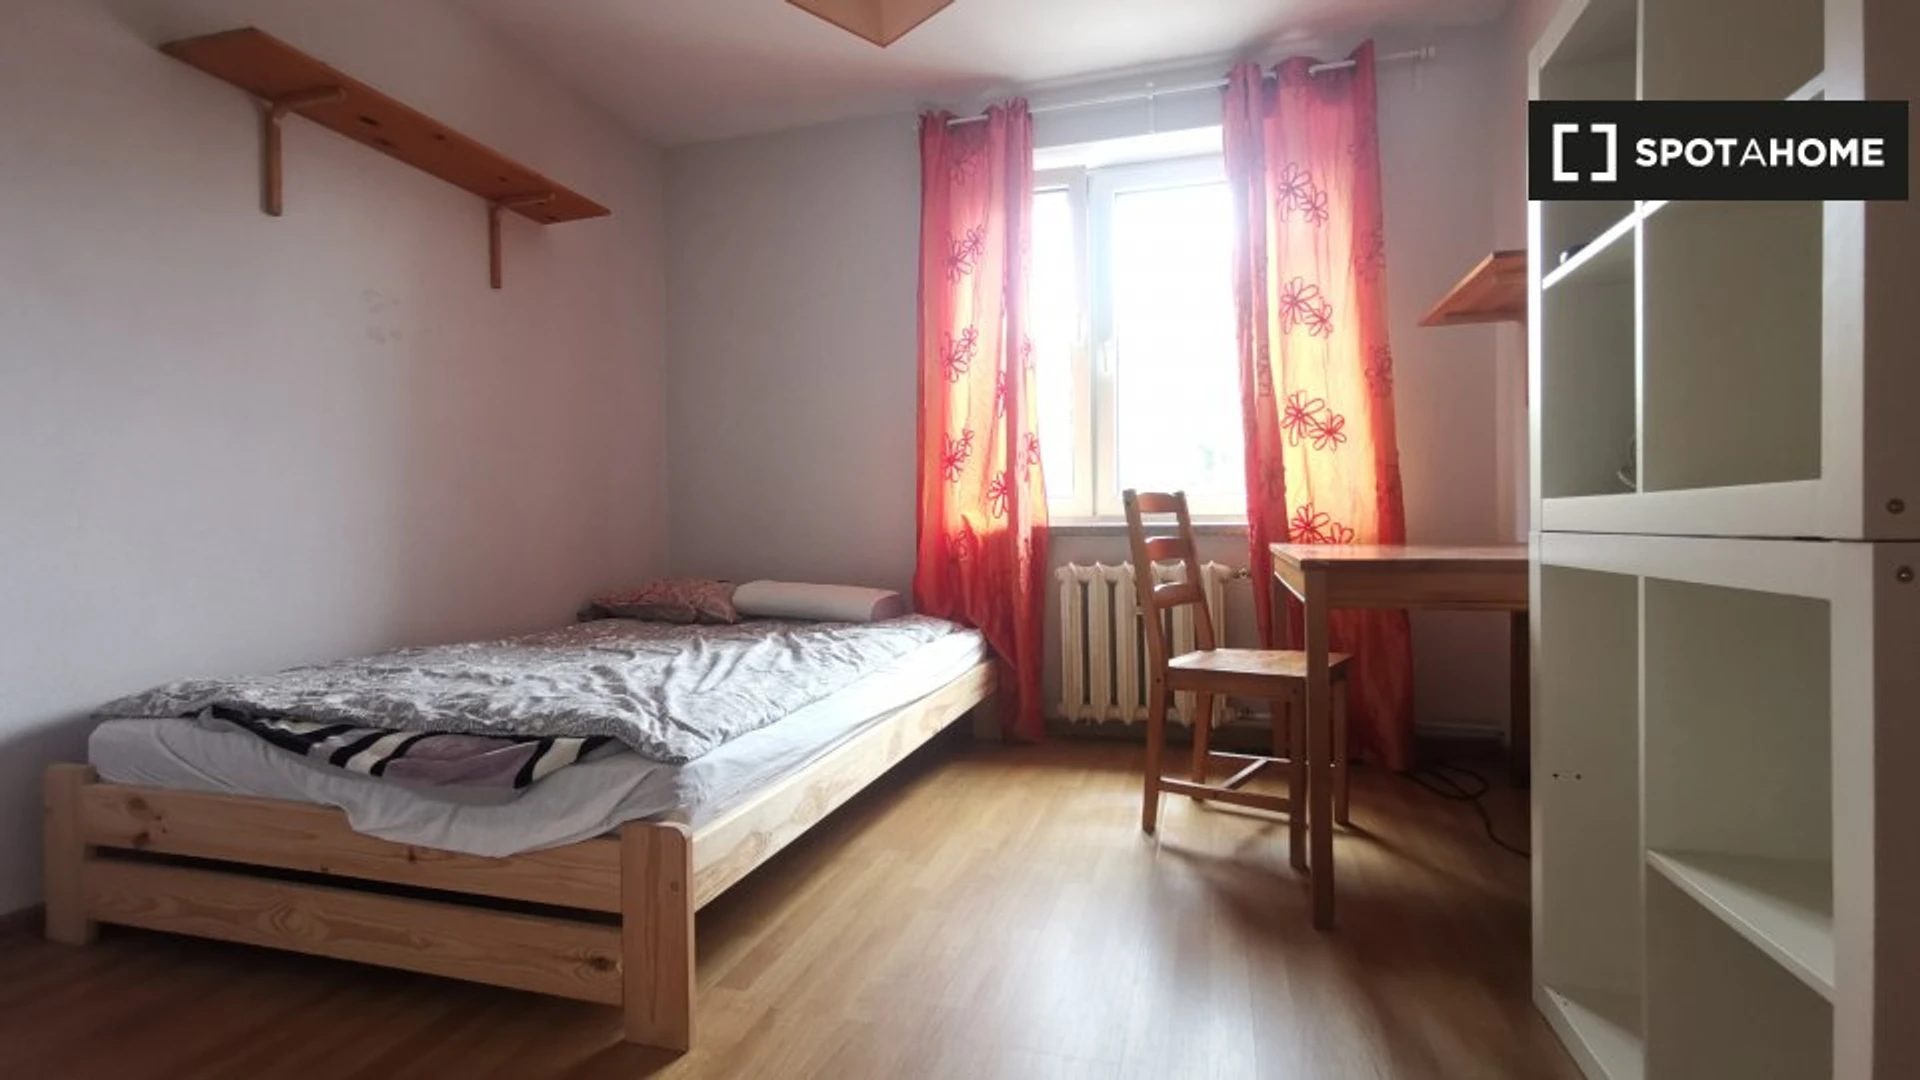 Kraków de çift kişilik yataklı kiralık oda